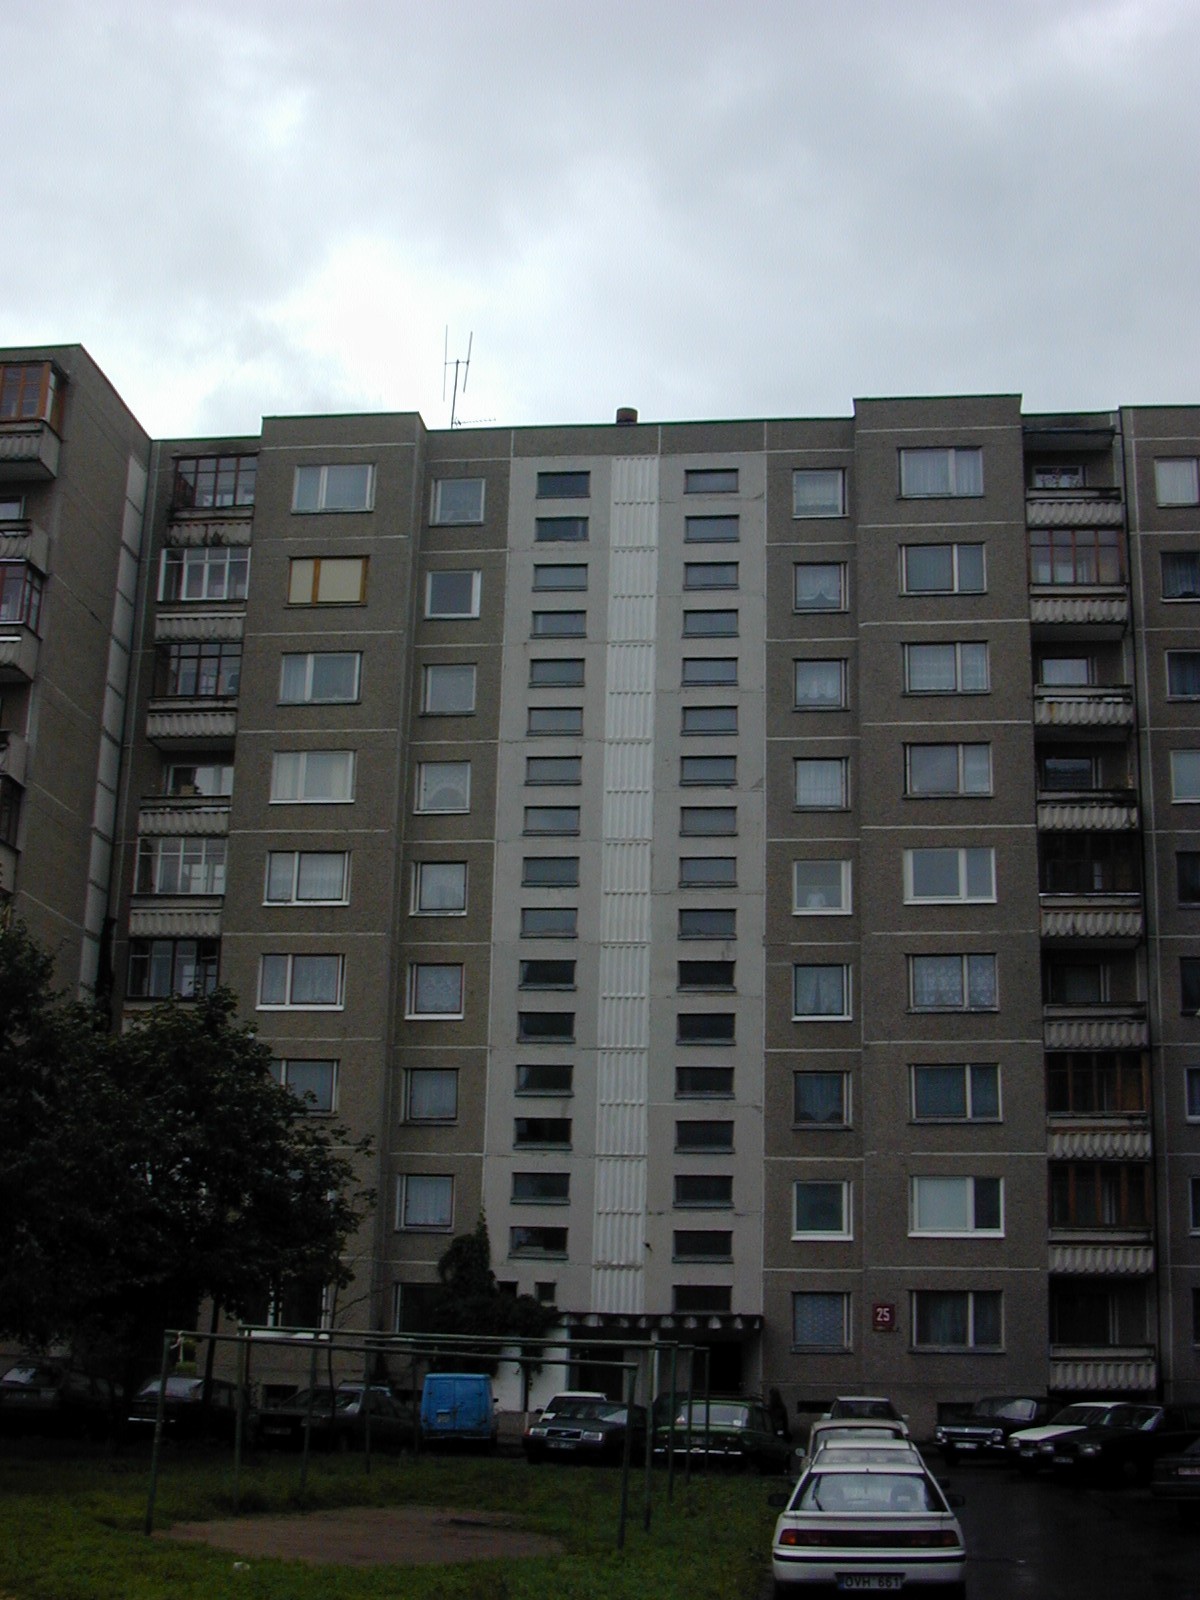 Rygos g. 25, Vilnius